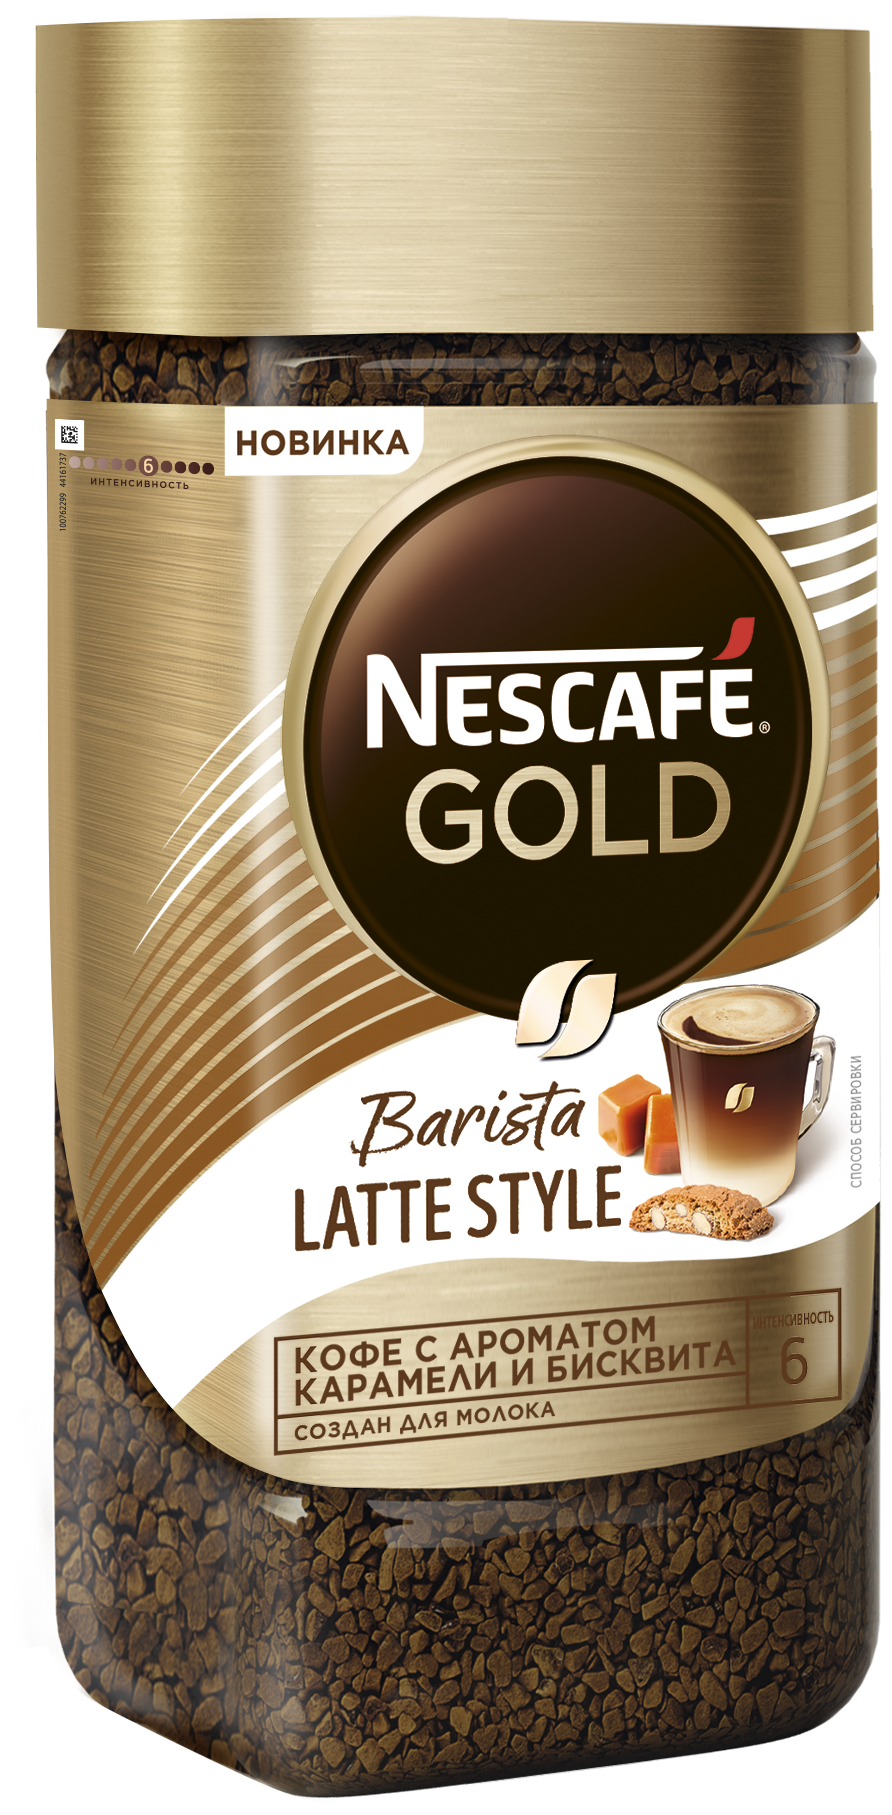 Кофе растворимый Nescafe GOLD Barista Latte Style с добавлением натурального жареного молотого ароматизированный, стеклянная банка, 2 уп. по 85 г - фотография № 3